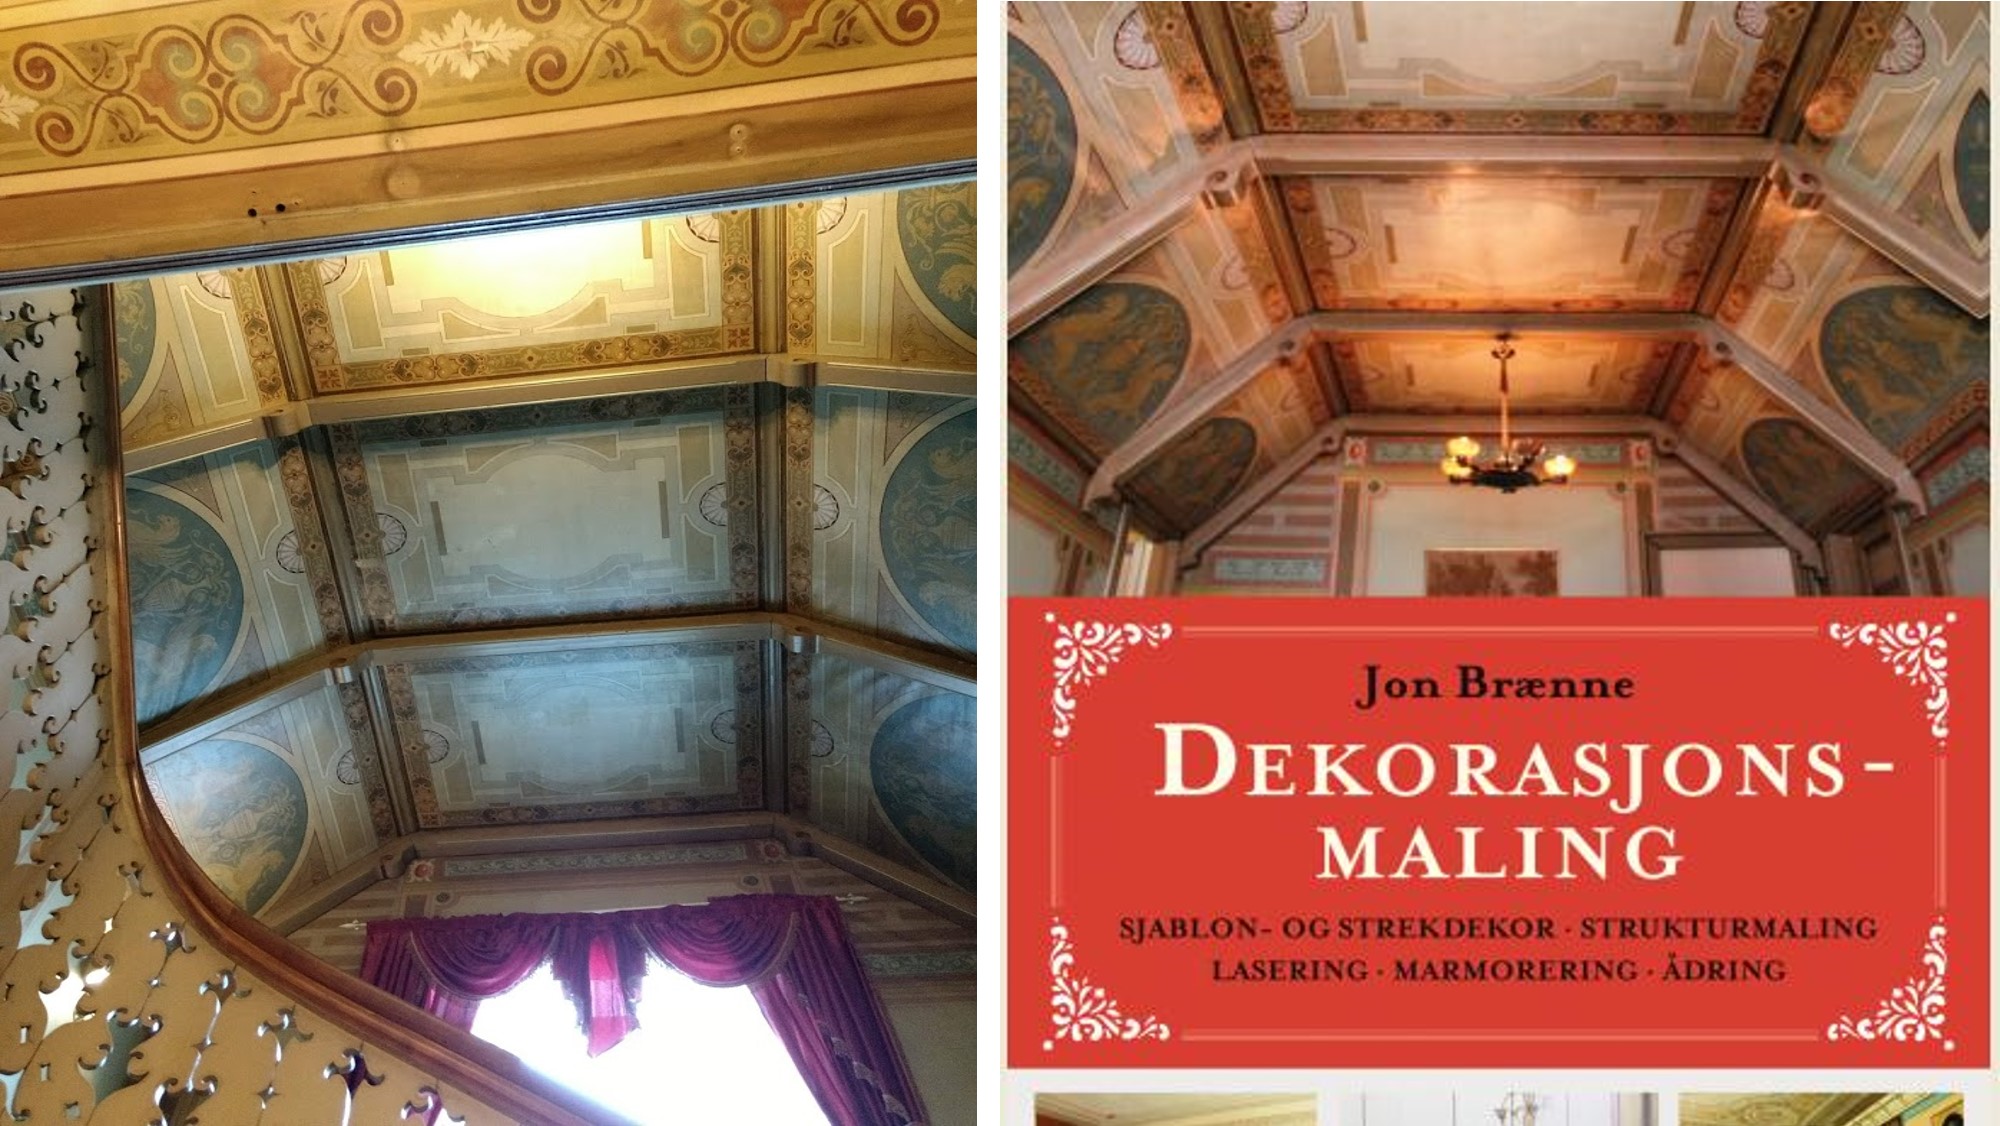 Dekorasjonsmaling, bok av Jon Brænne, hallen i Villa Bergfall pryder omslaget